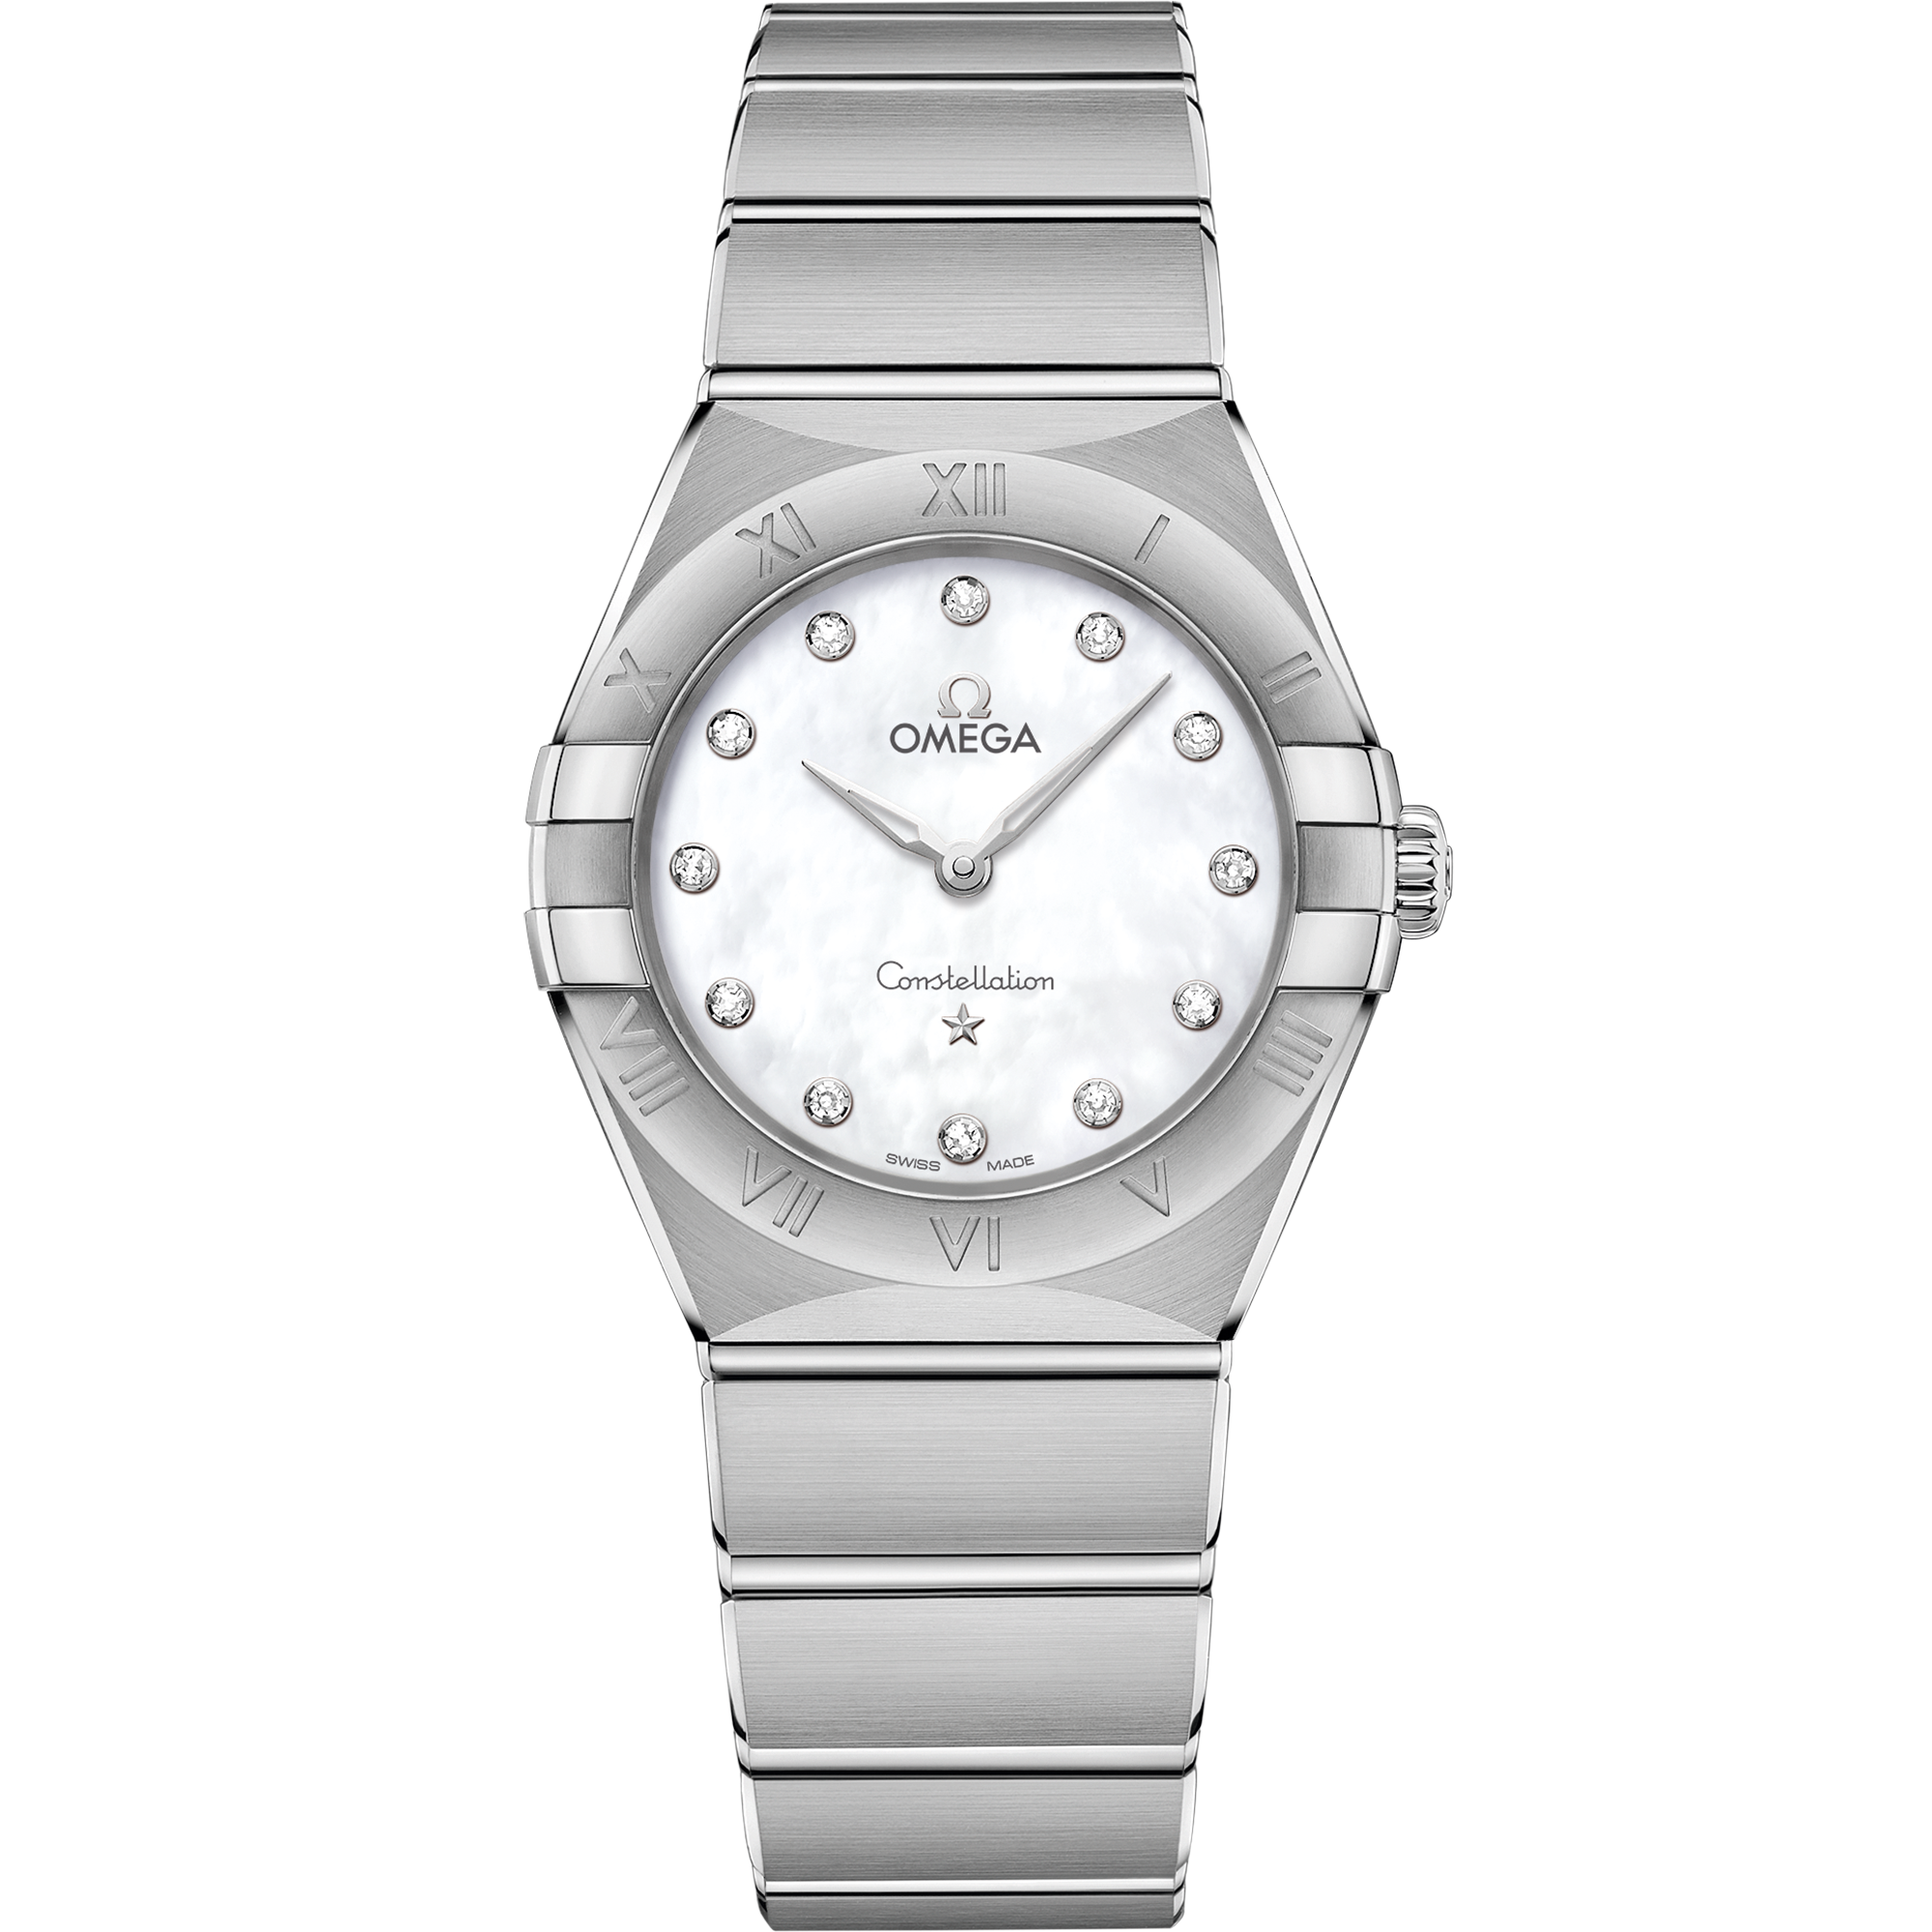 Uhr mit Weiß Zifferblatt auf Stahl Gehäuse mit Edelstahlarmband bracelet - Constellation 28 mm, Stahl mit Stahlband - 131.10.28.60.55.001